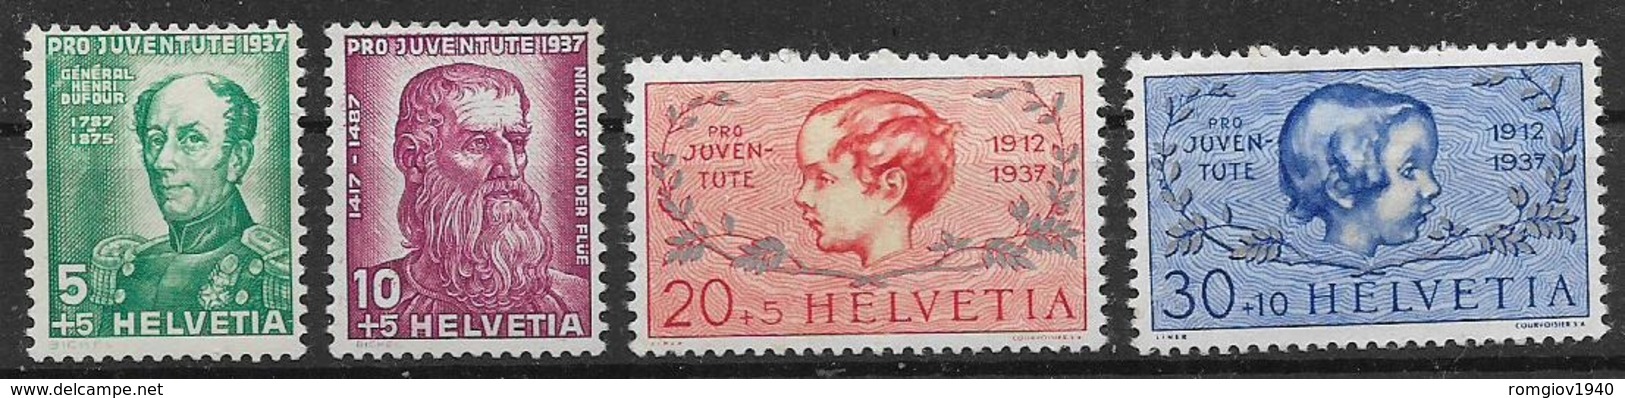 SVIZZERA -1937 - PRO JUVENTUTE - UNIF.303-306  MNH XF - Nuovi